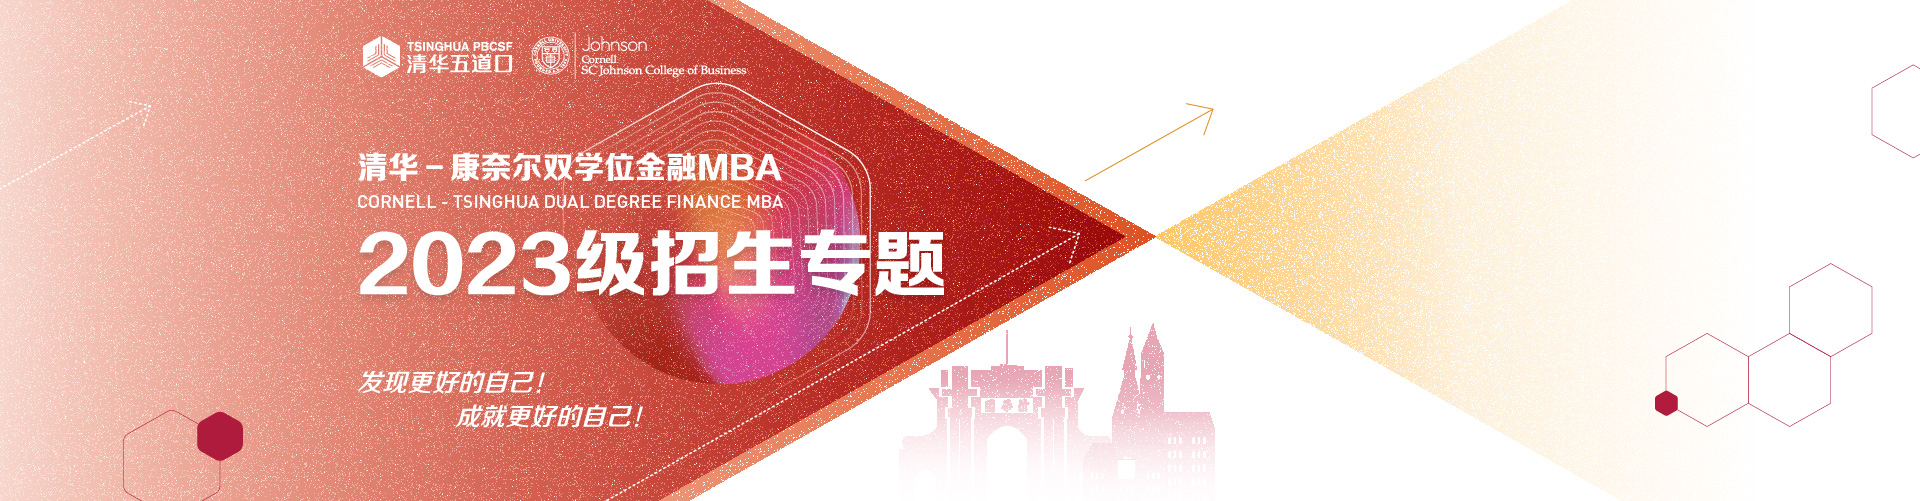 清华－康奈尔双学位金融MBA2023级招生专题